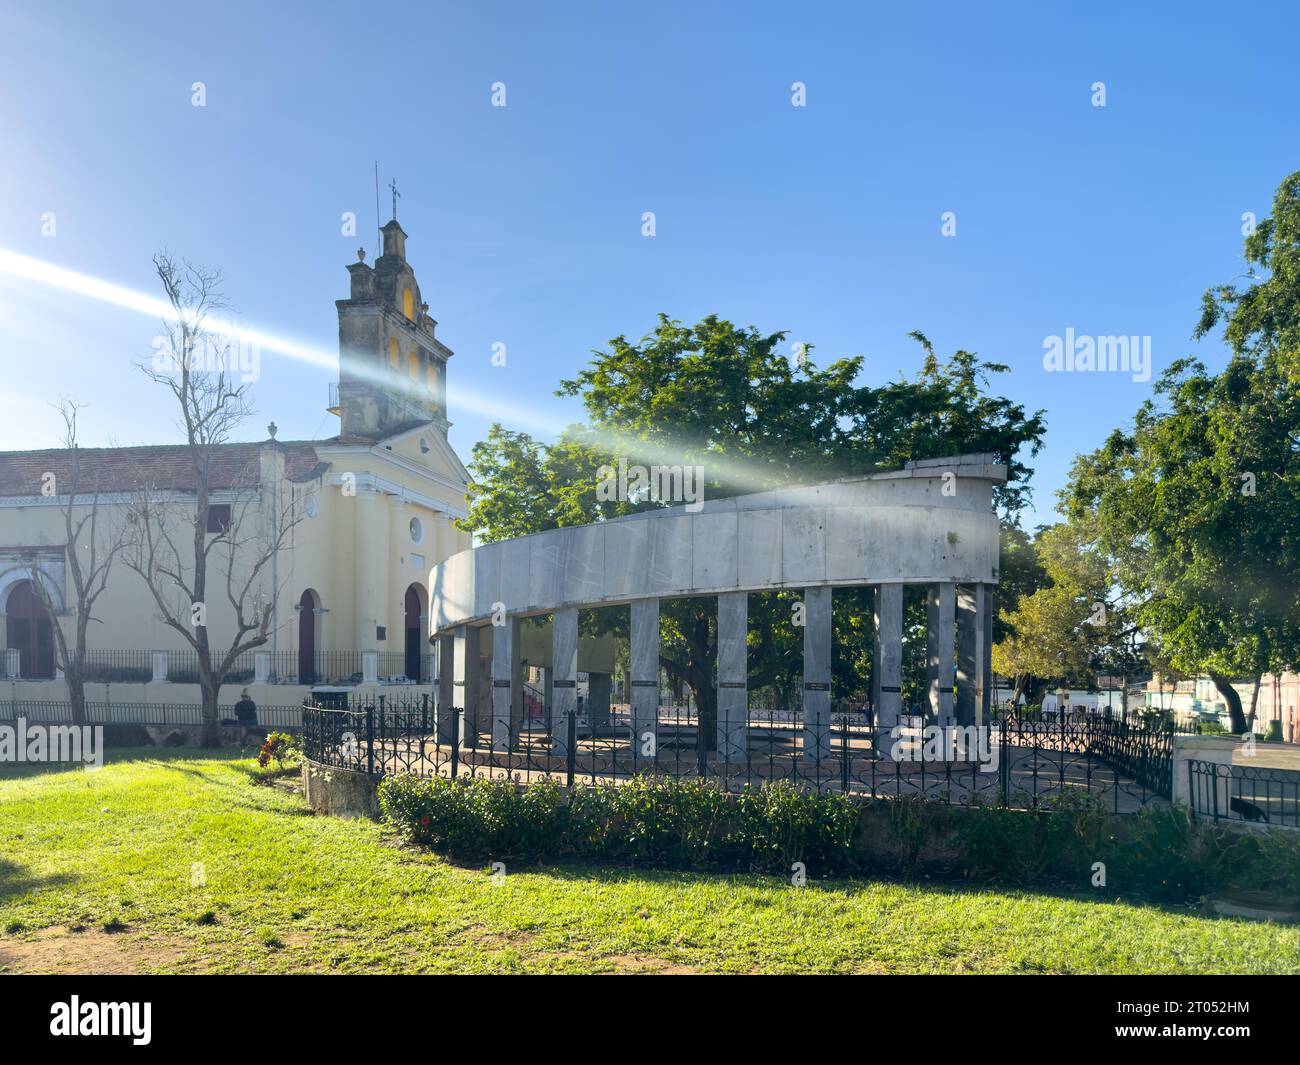 Parco o piazza El Carmen. Il monumento in marmo del colonnato segna il luogo di fondazione della città. La chiesa cattolica coloniale di El Carmen sullo sfondo Foto Stock